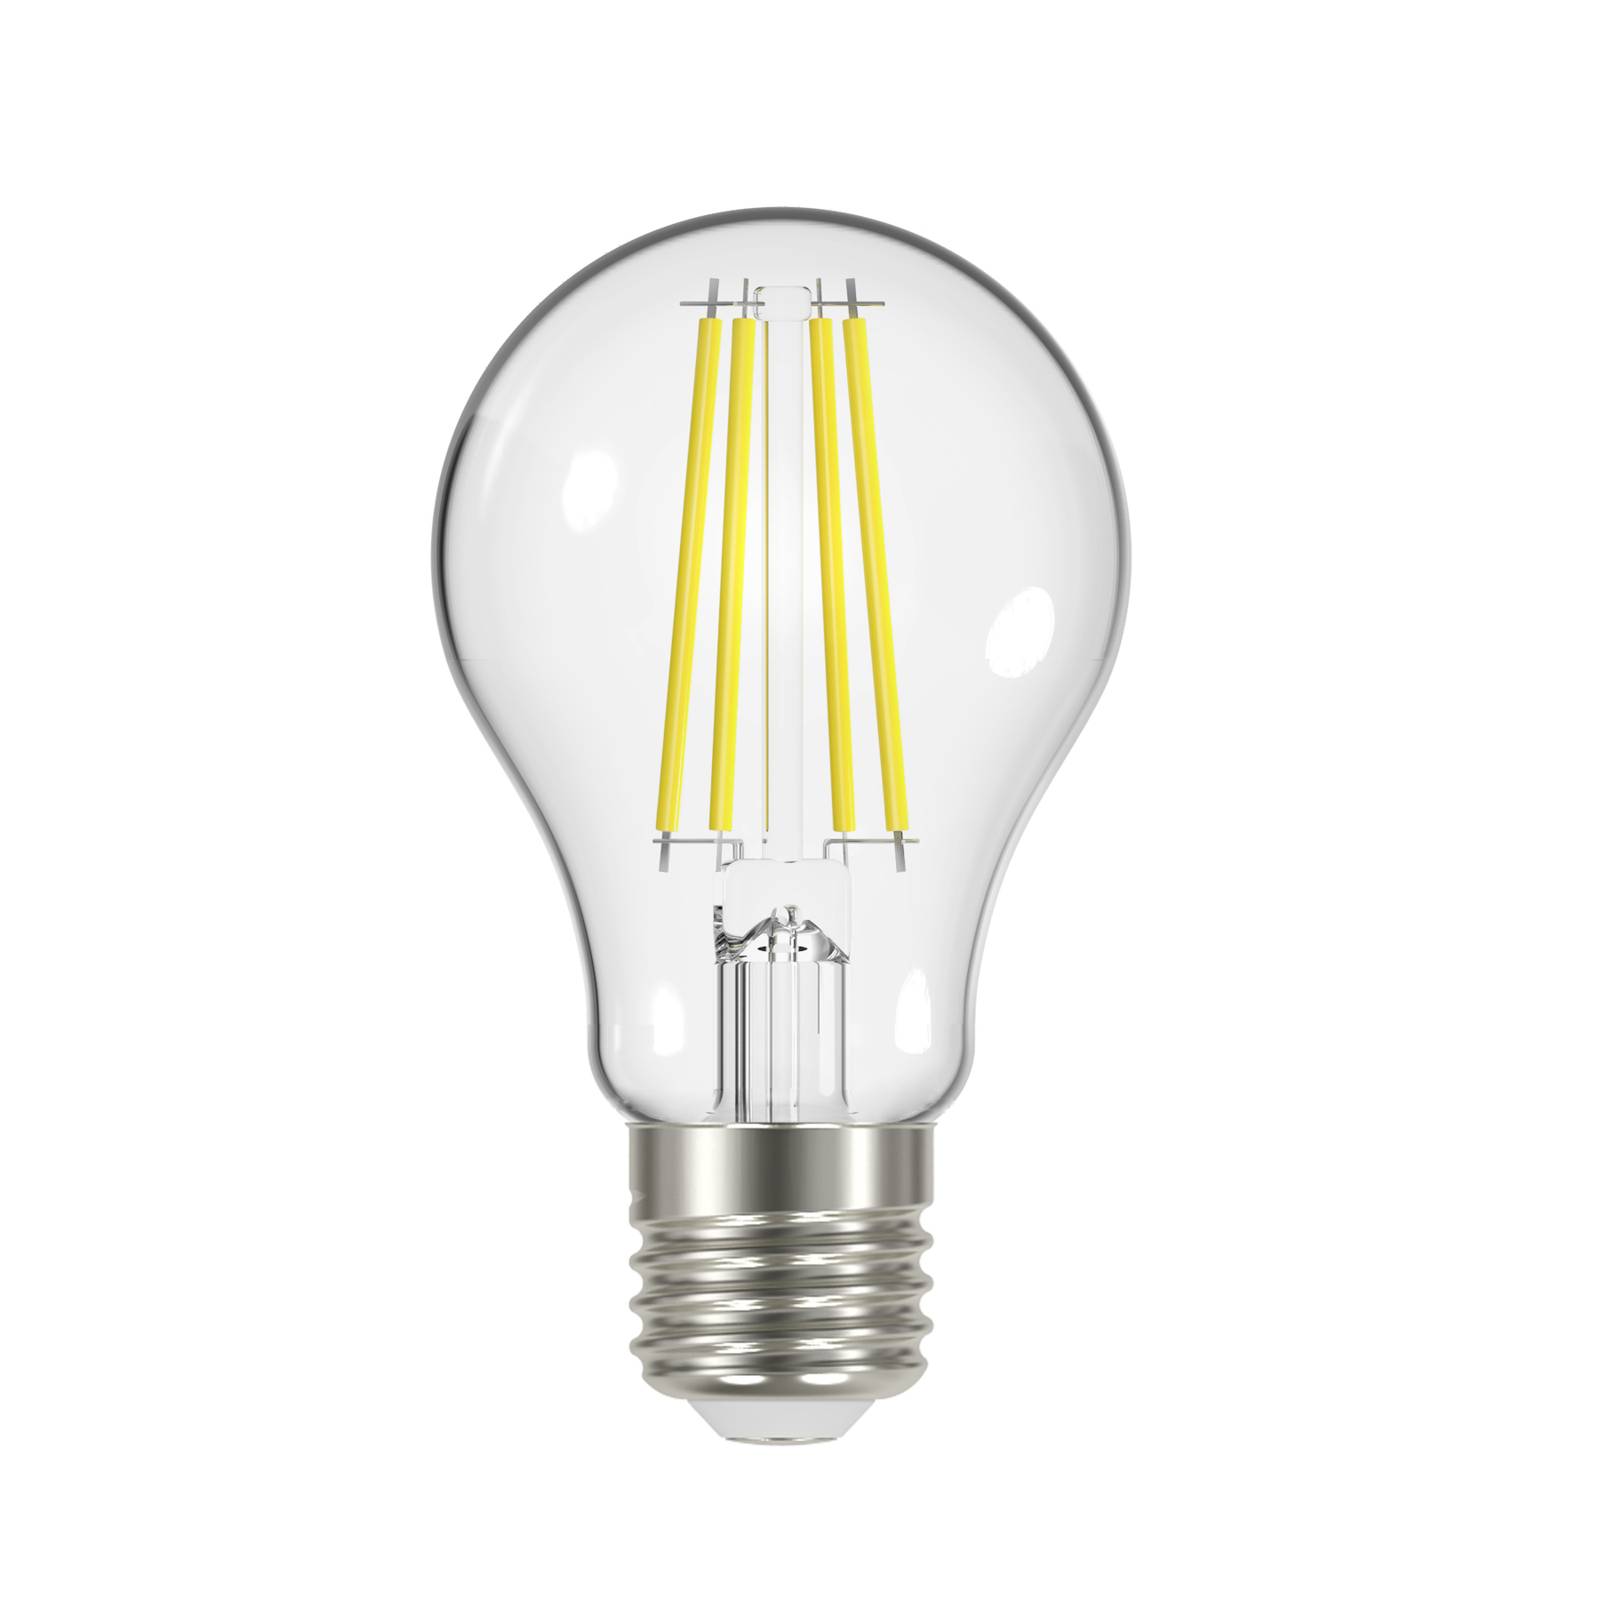 Arcchio Ampoule LED filament, claire, E27, 7,2 W, 4000K, 1521 lm